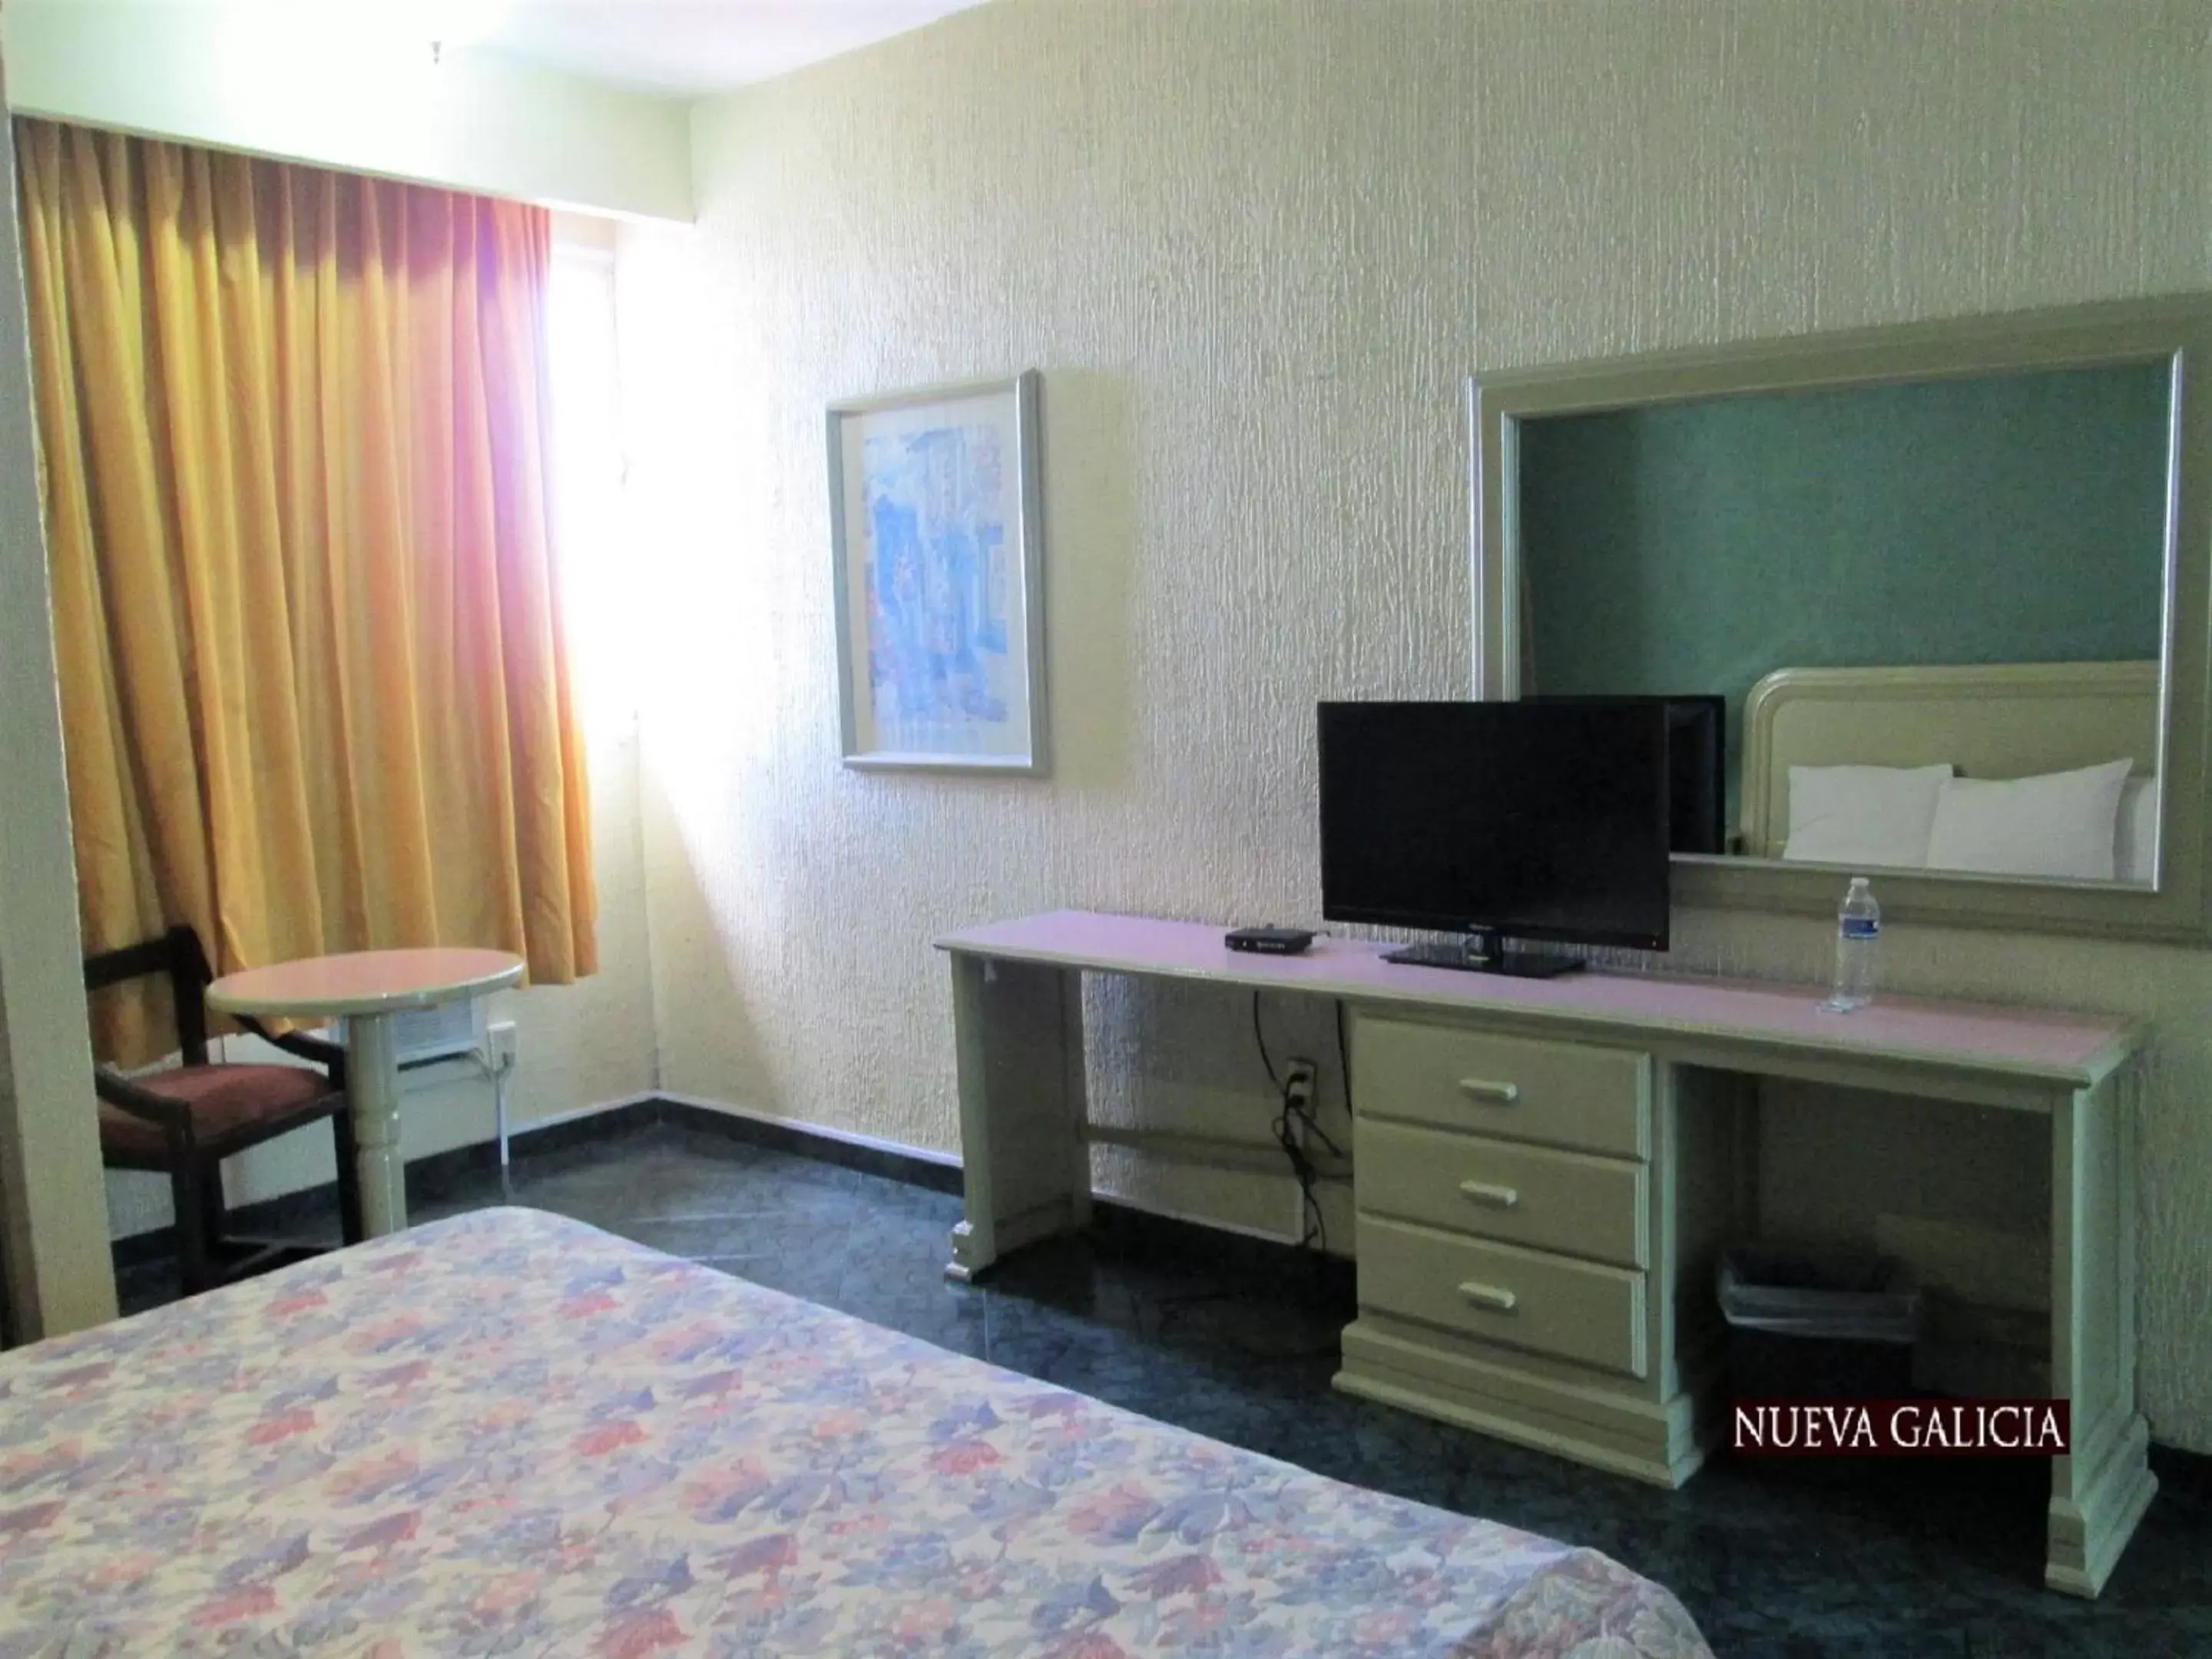 Bedroom, TV/Entertainment Center in Hotel Nueva Galicia